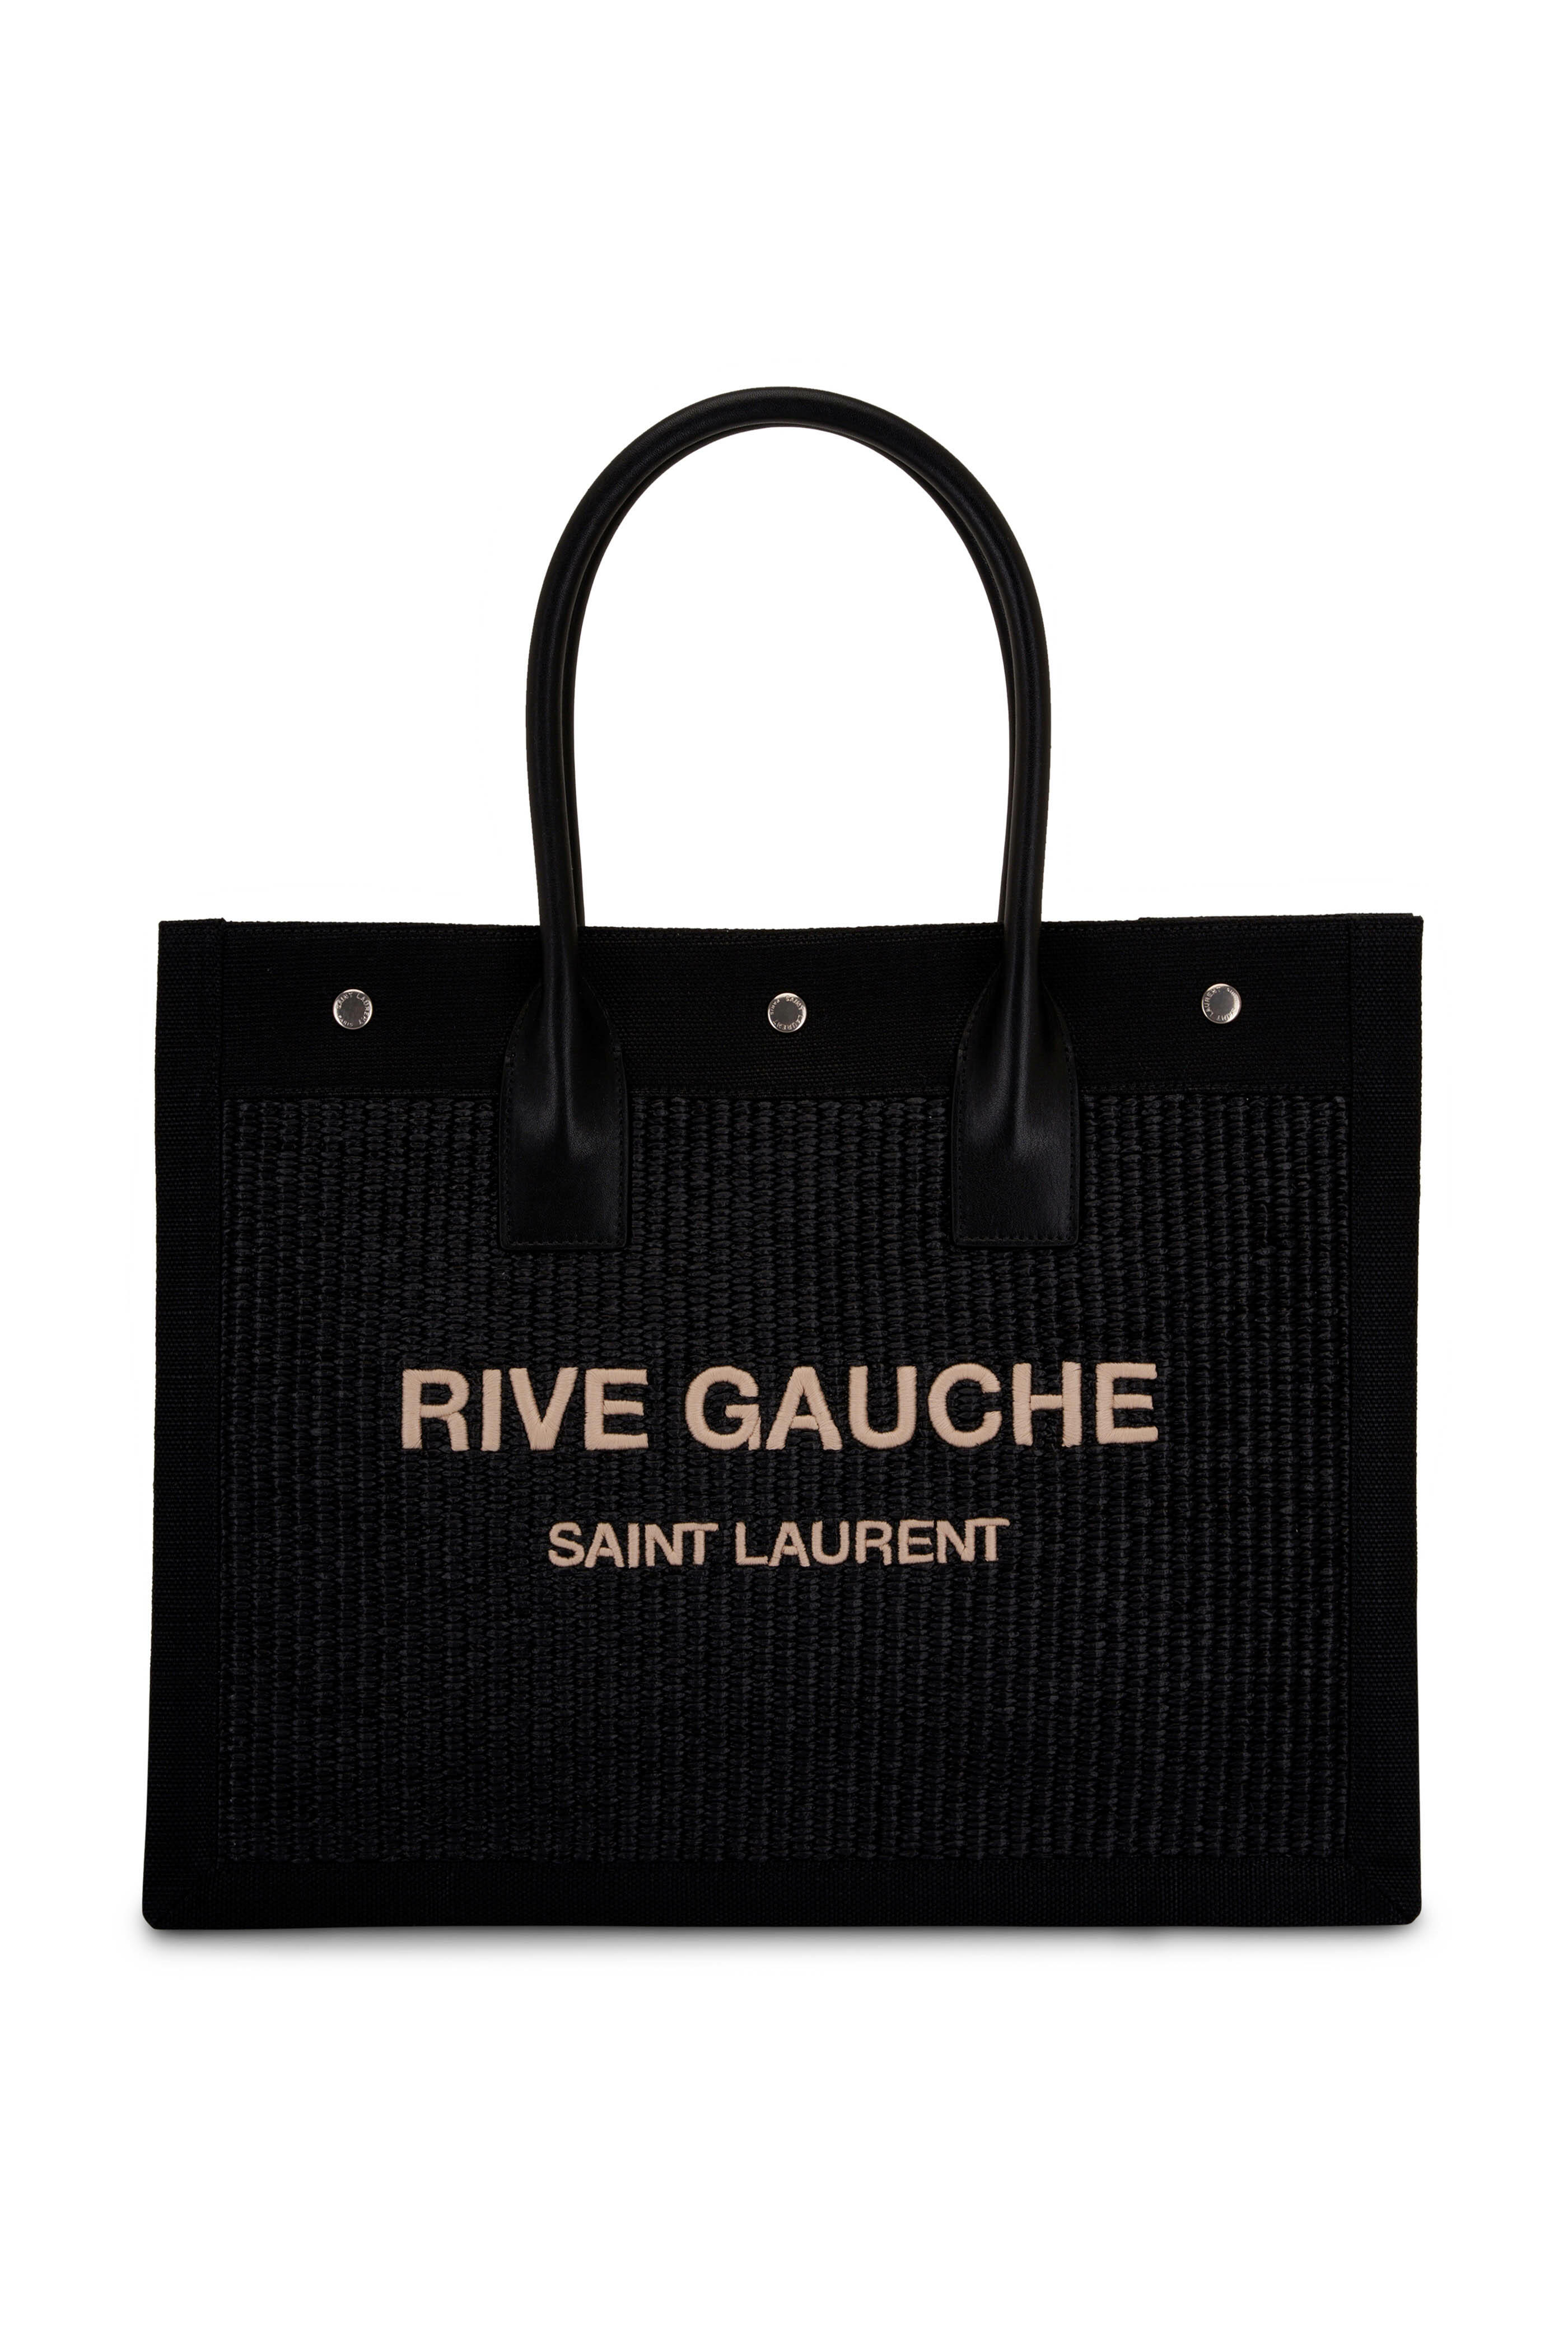 Yves Saint Laurent, Bags, Saint Laurent Black Leather Small Rive Gauche  Tote